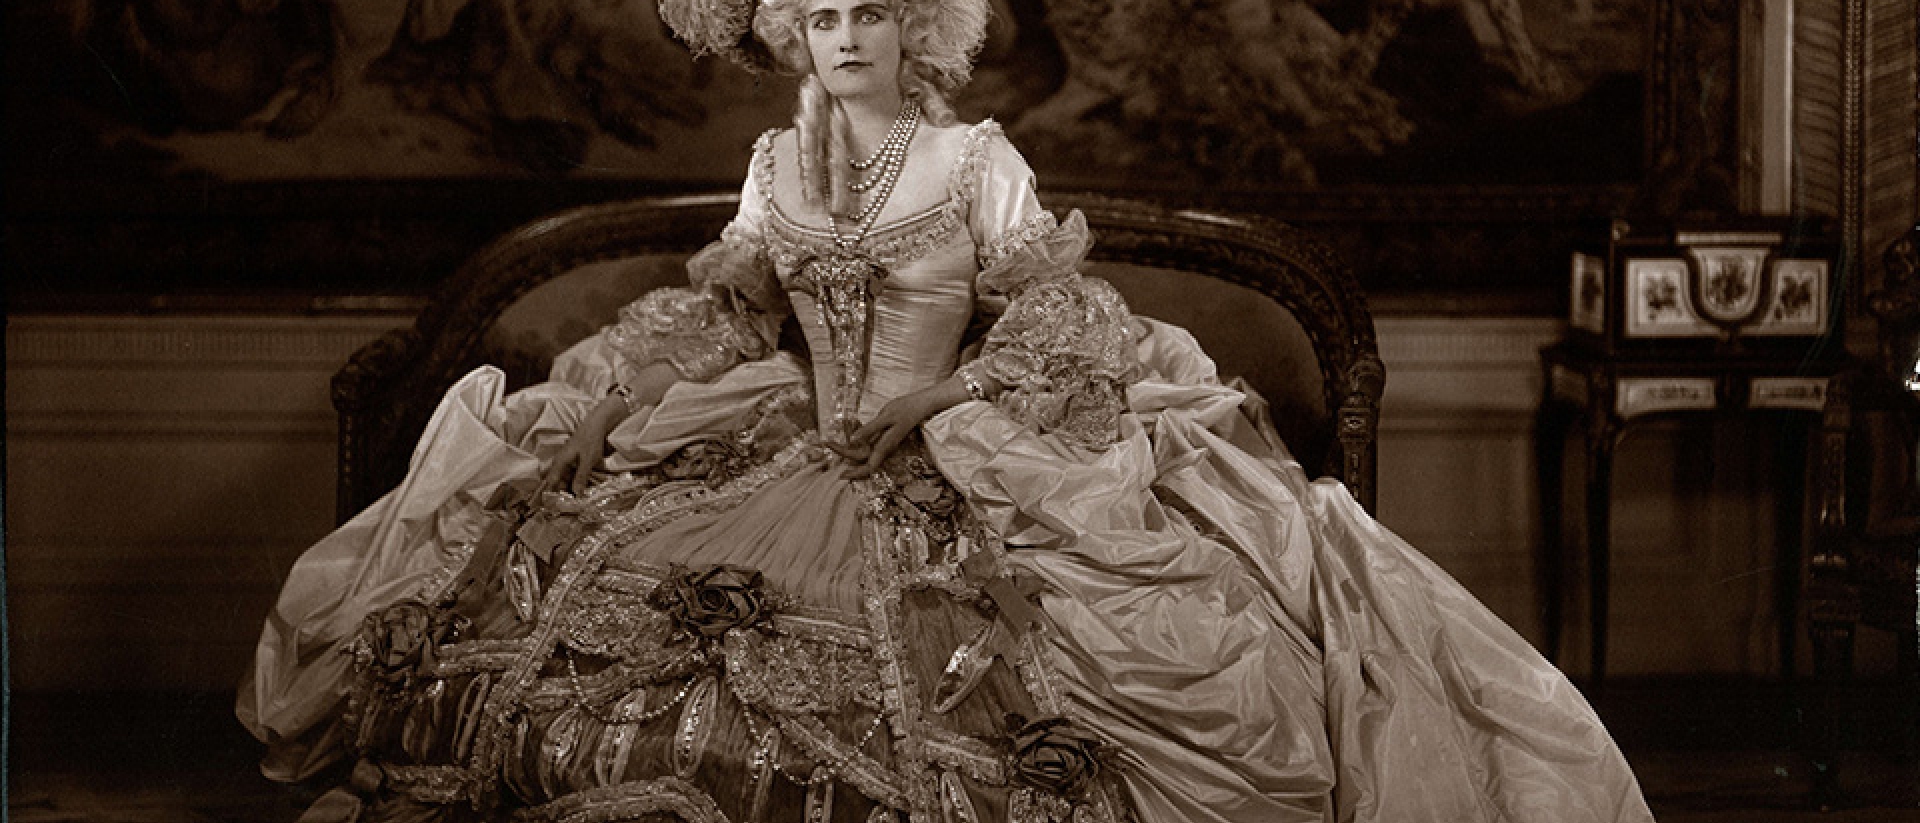 Marjorie Post in costume as Marie Antoinette